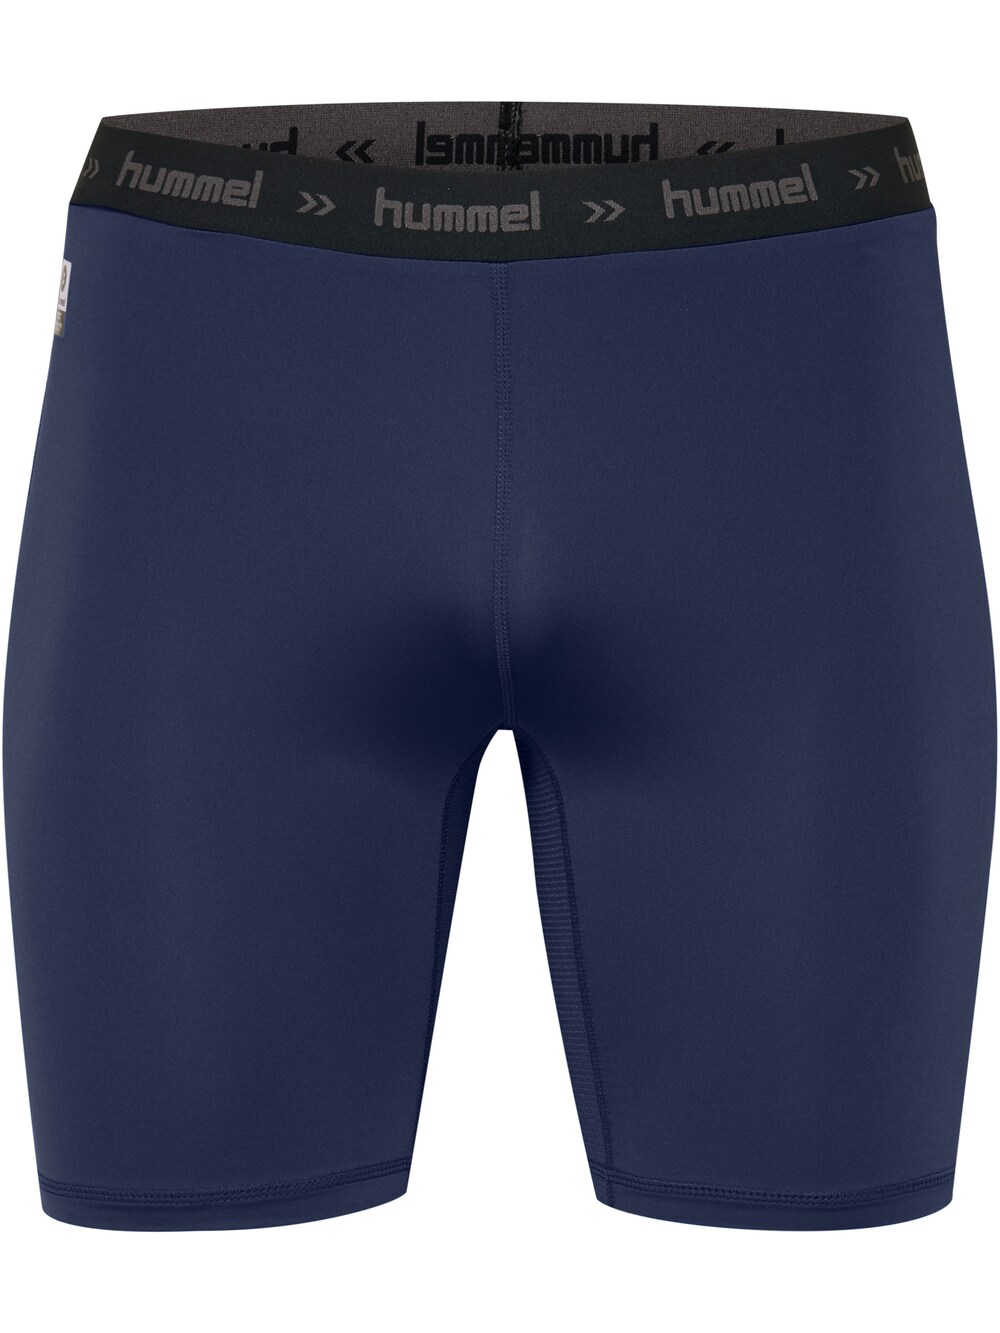 Узкие тренировочные брюки Hummel, морской синий